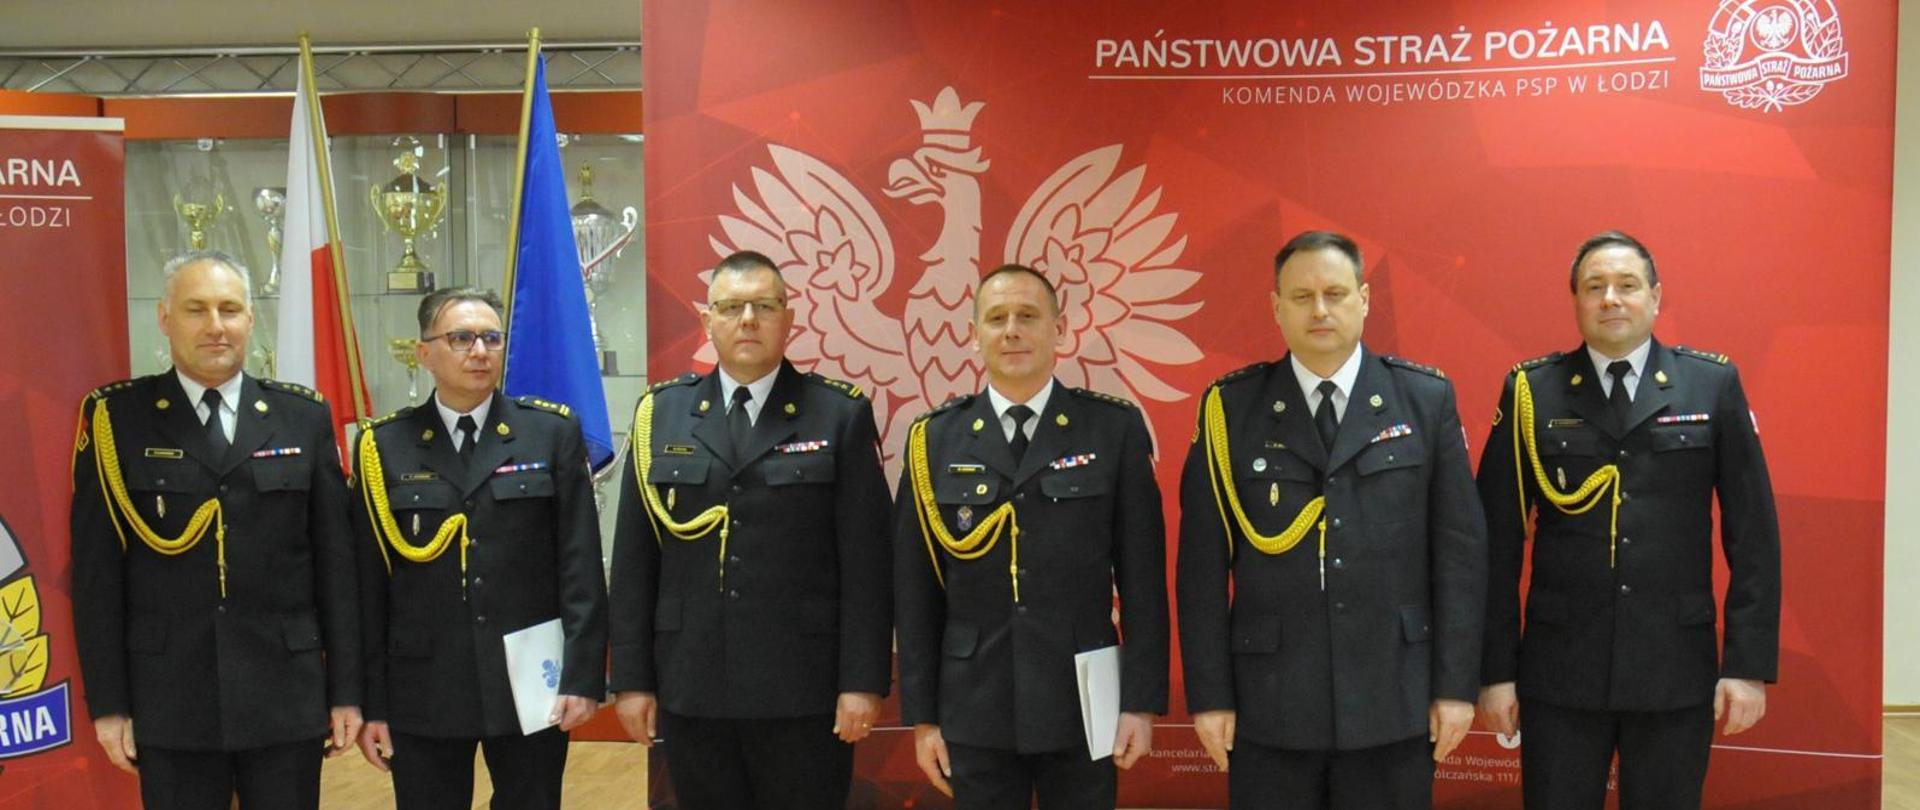 Komendanci PSP stojący w mundurach wyjściowych na czerwonym tle